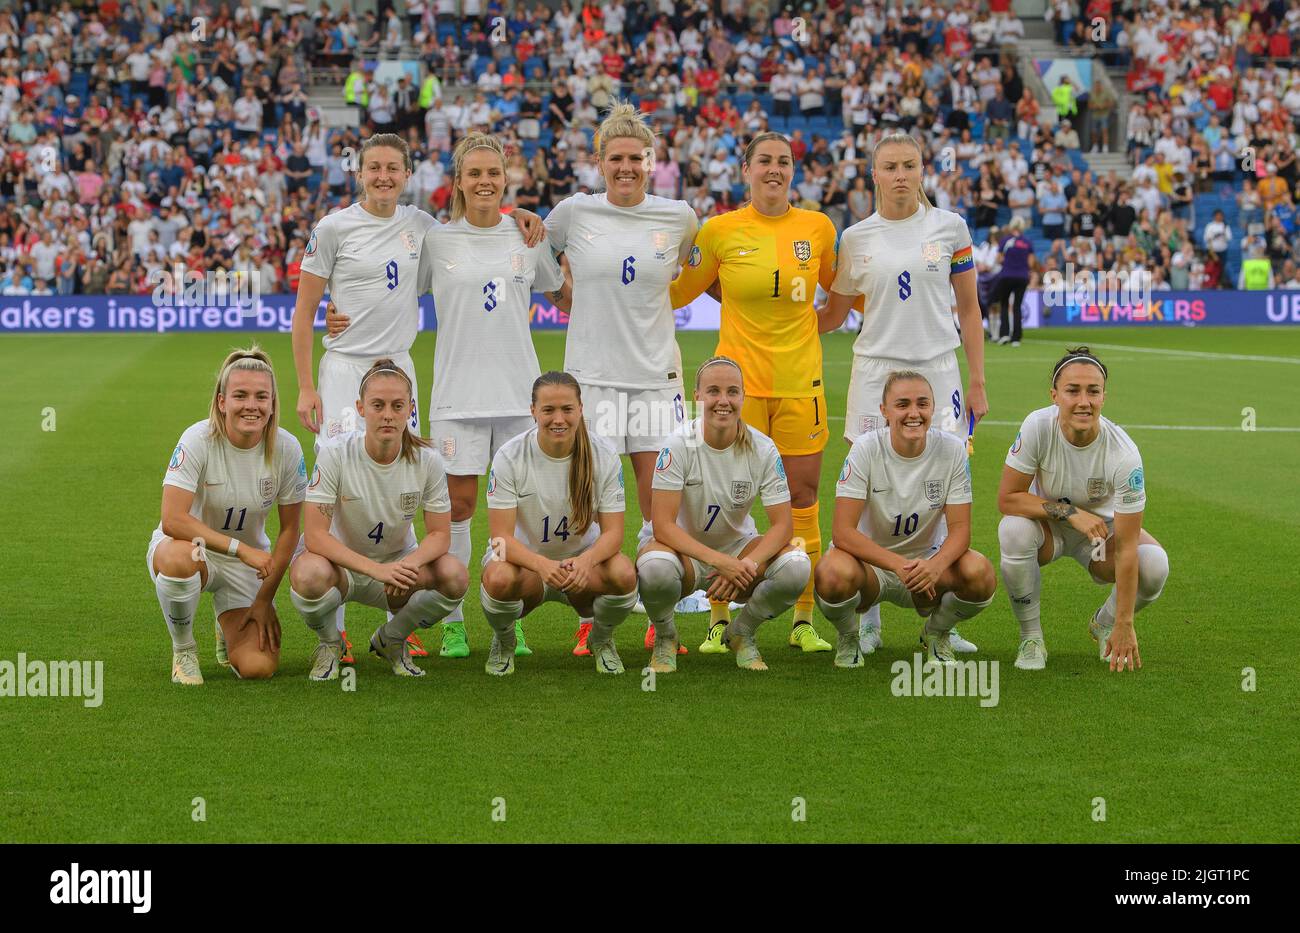 11 juillet 2022 - Angleterre contre Norvège - UEFA Women's Euro 2022 - Groupe A - Brighton & Hove Community Stadium l'équipe d'Angleterre avant le match contre la Norvège. Crédit photo : © Mark pain / Alamy Live News Banque D'Images